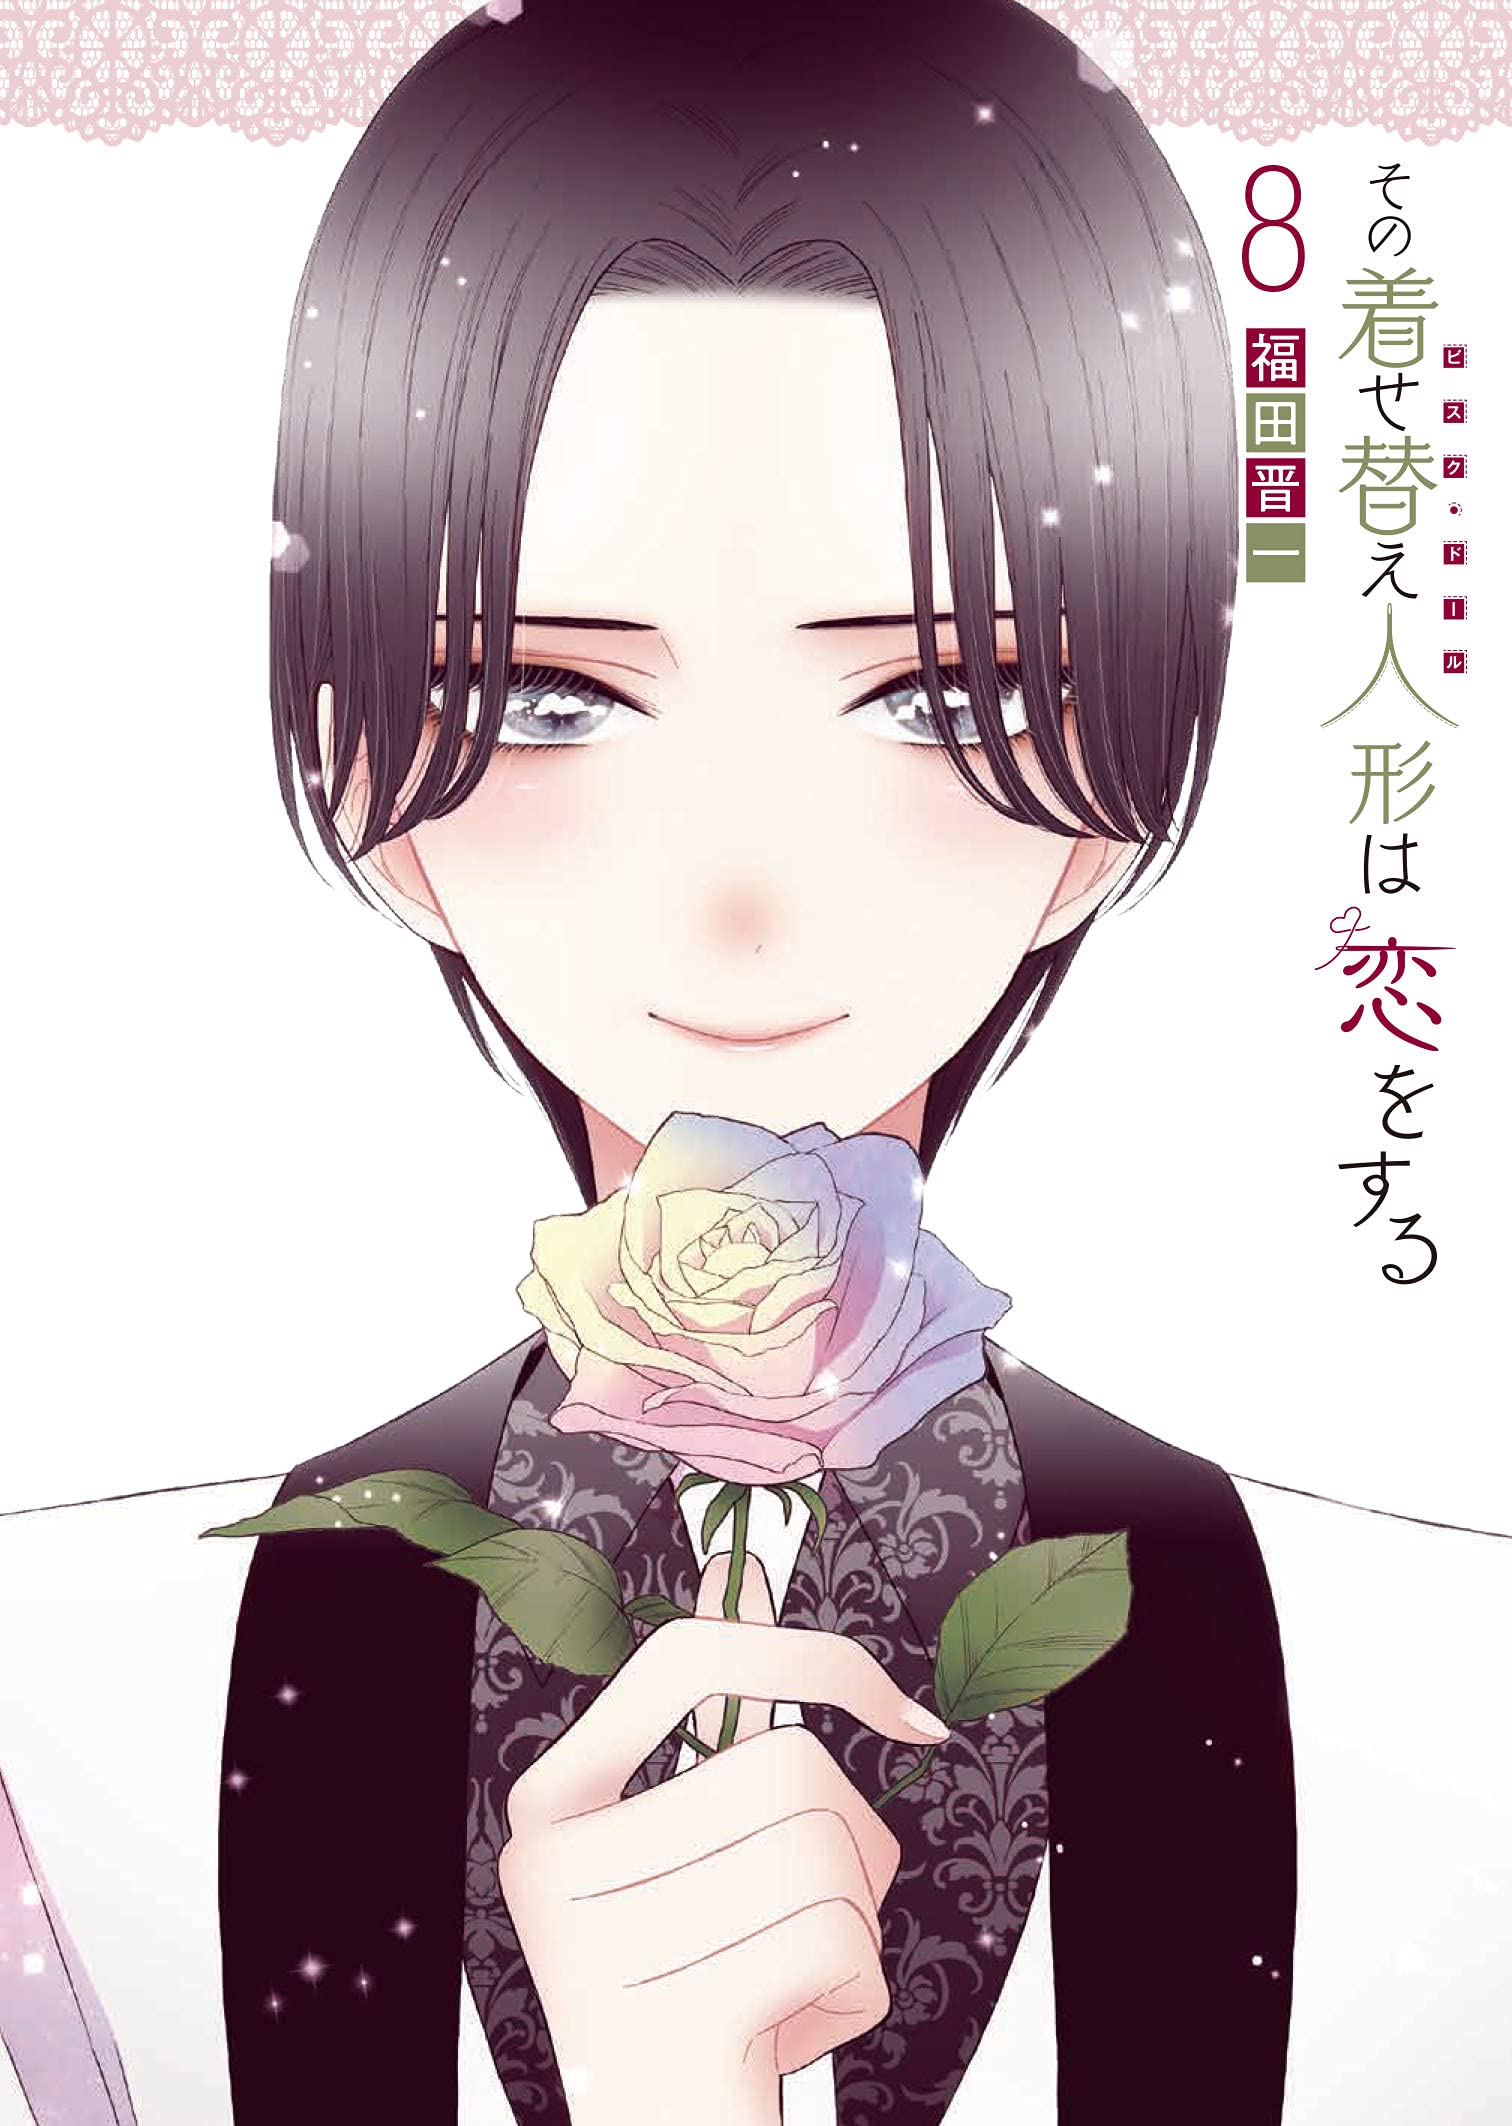 Manga 'Sono Bisque Doll wa Koi wo Suru' Gets TV Anime